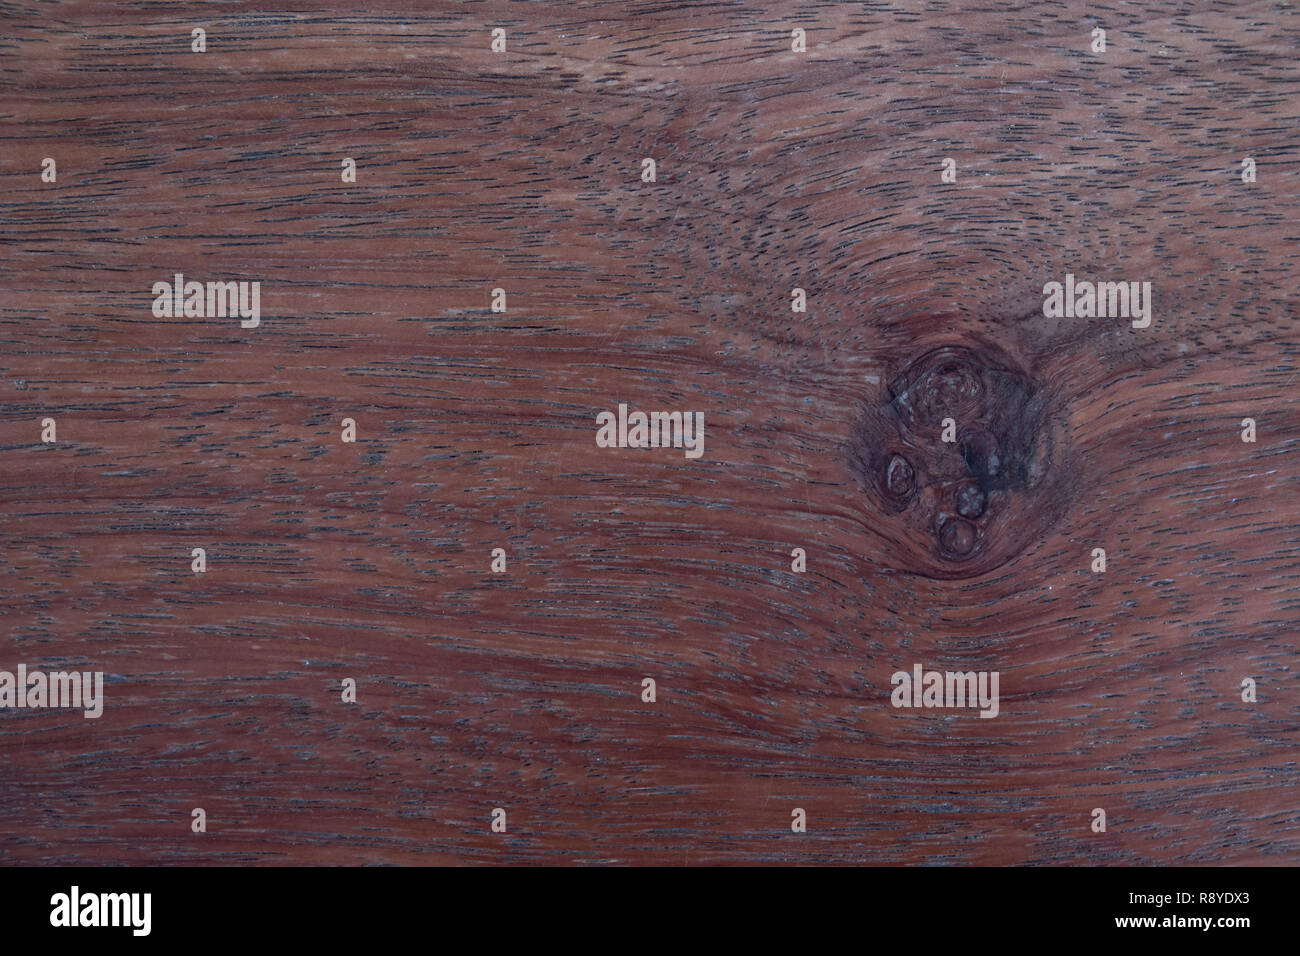 La texture du bois. old weathered wood texture background. Banque D'Images